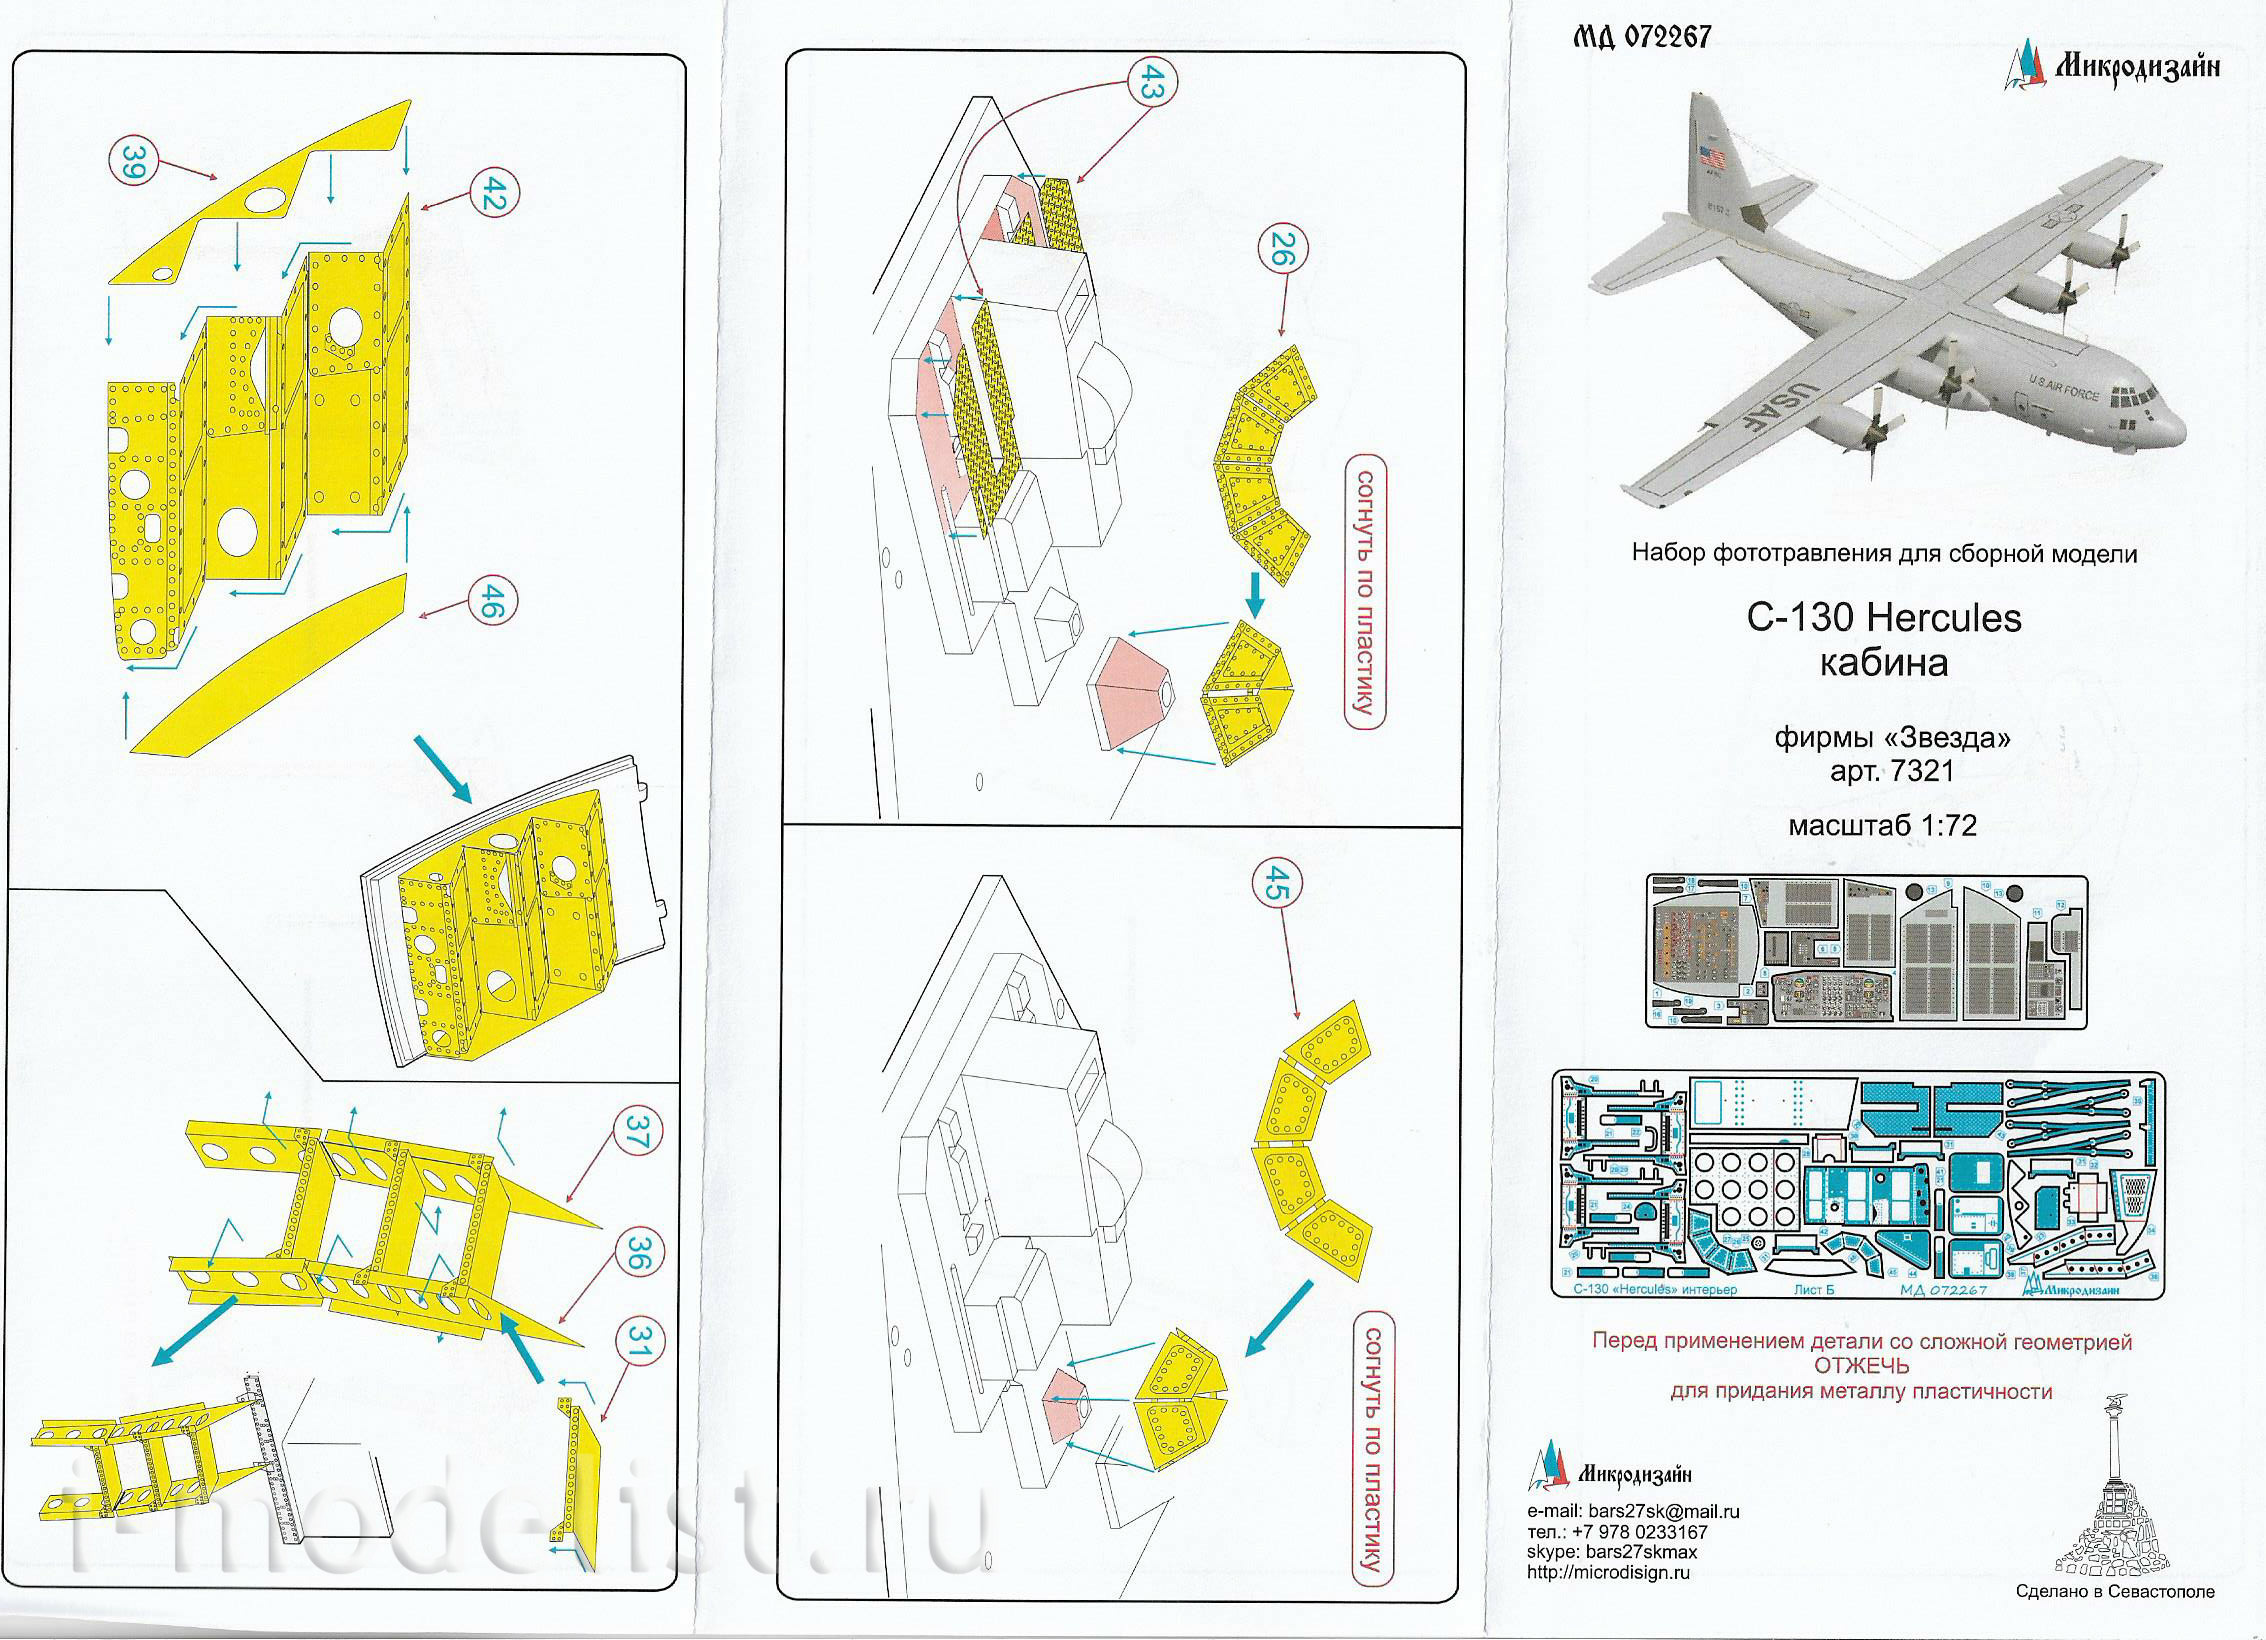 072267 Микродизайн 1/72 Набор фототравления для C-130 Hercules (пилотская кабина) от Звезды